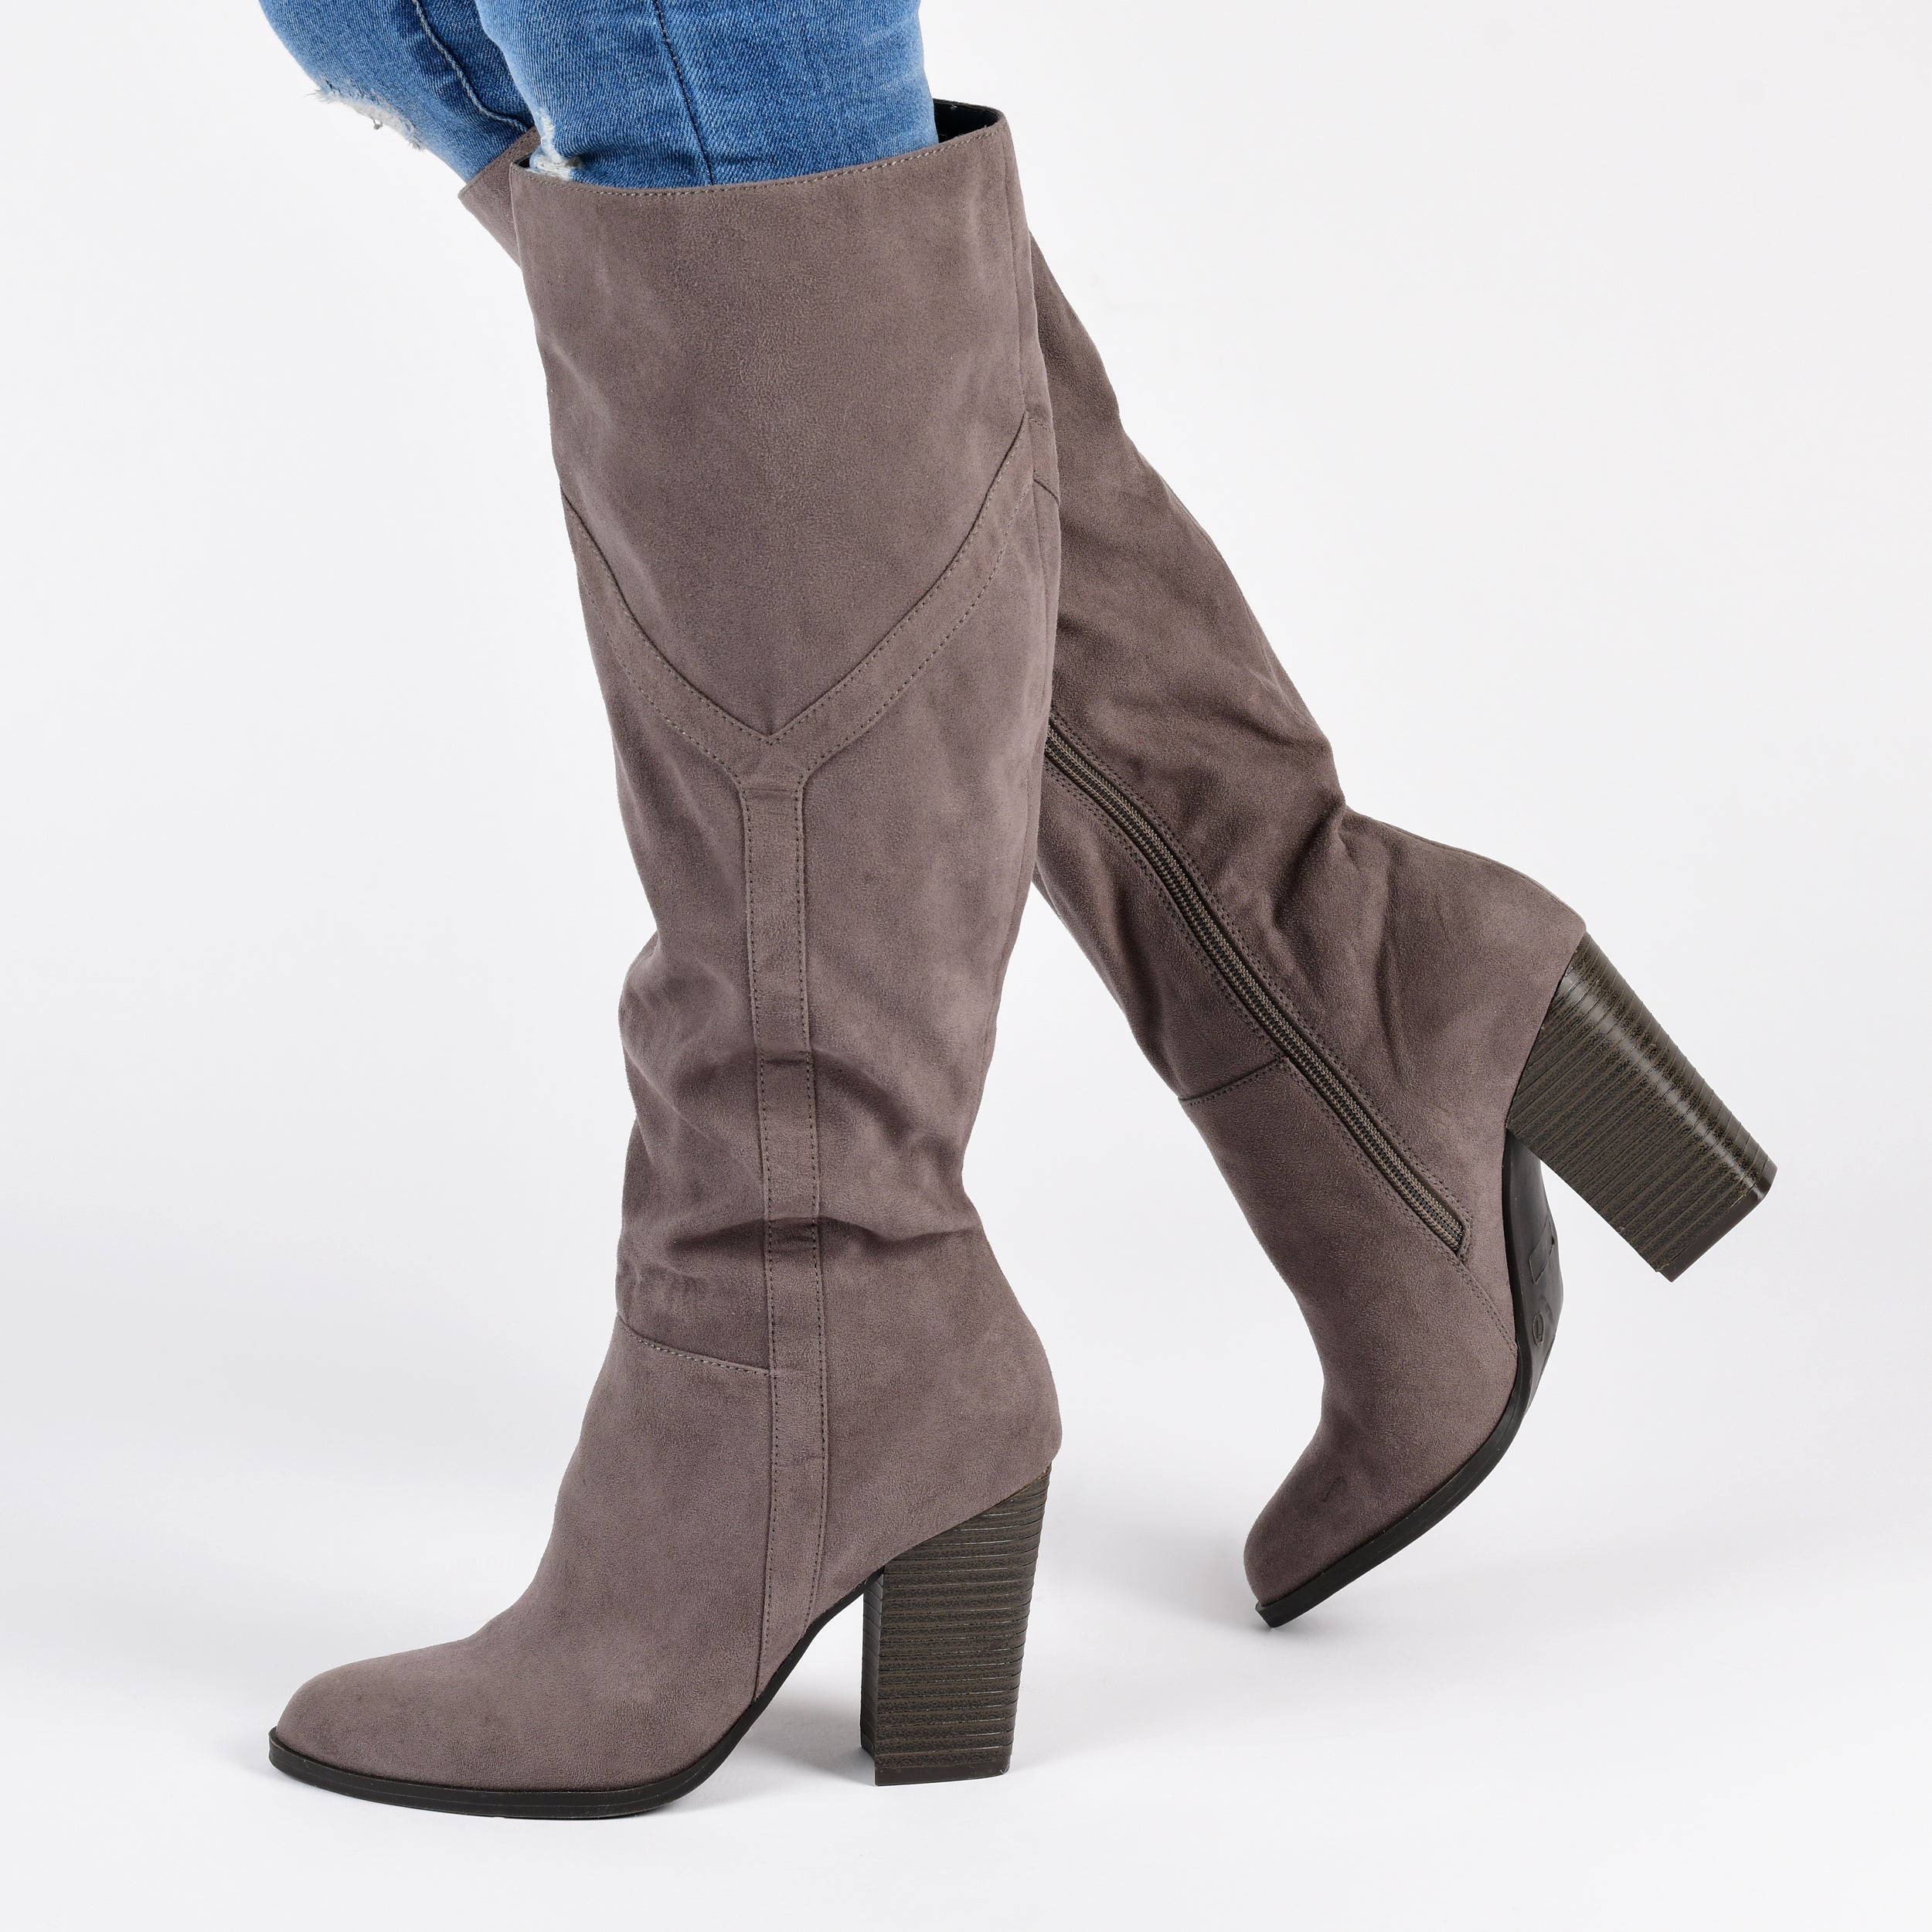 Kyllie Boot | Women's Blovk Heel Boots | Journee Collection